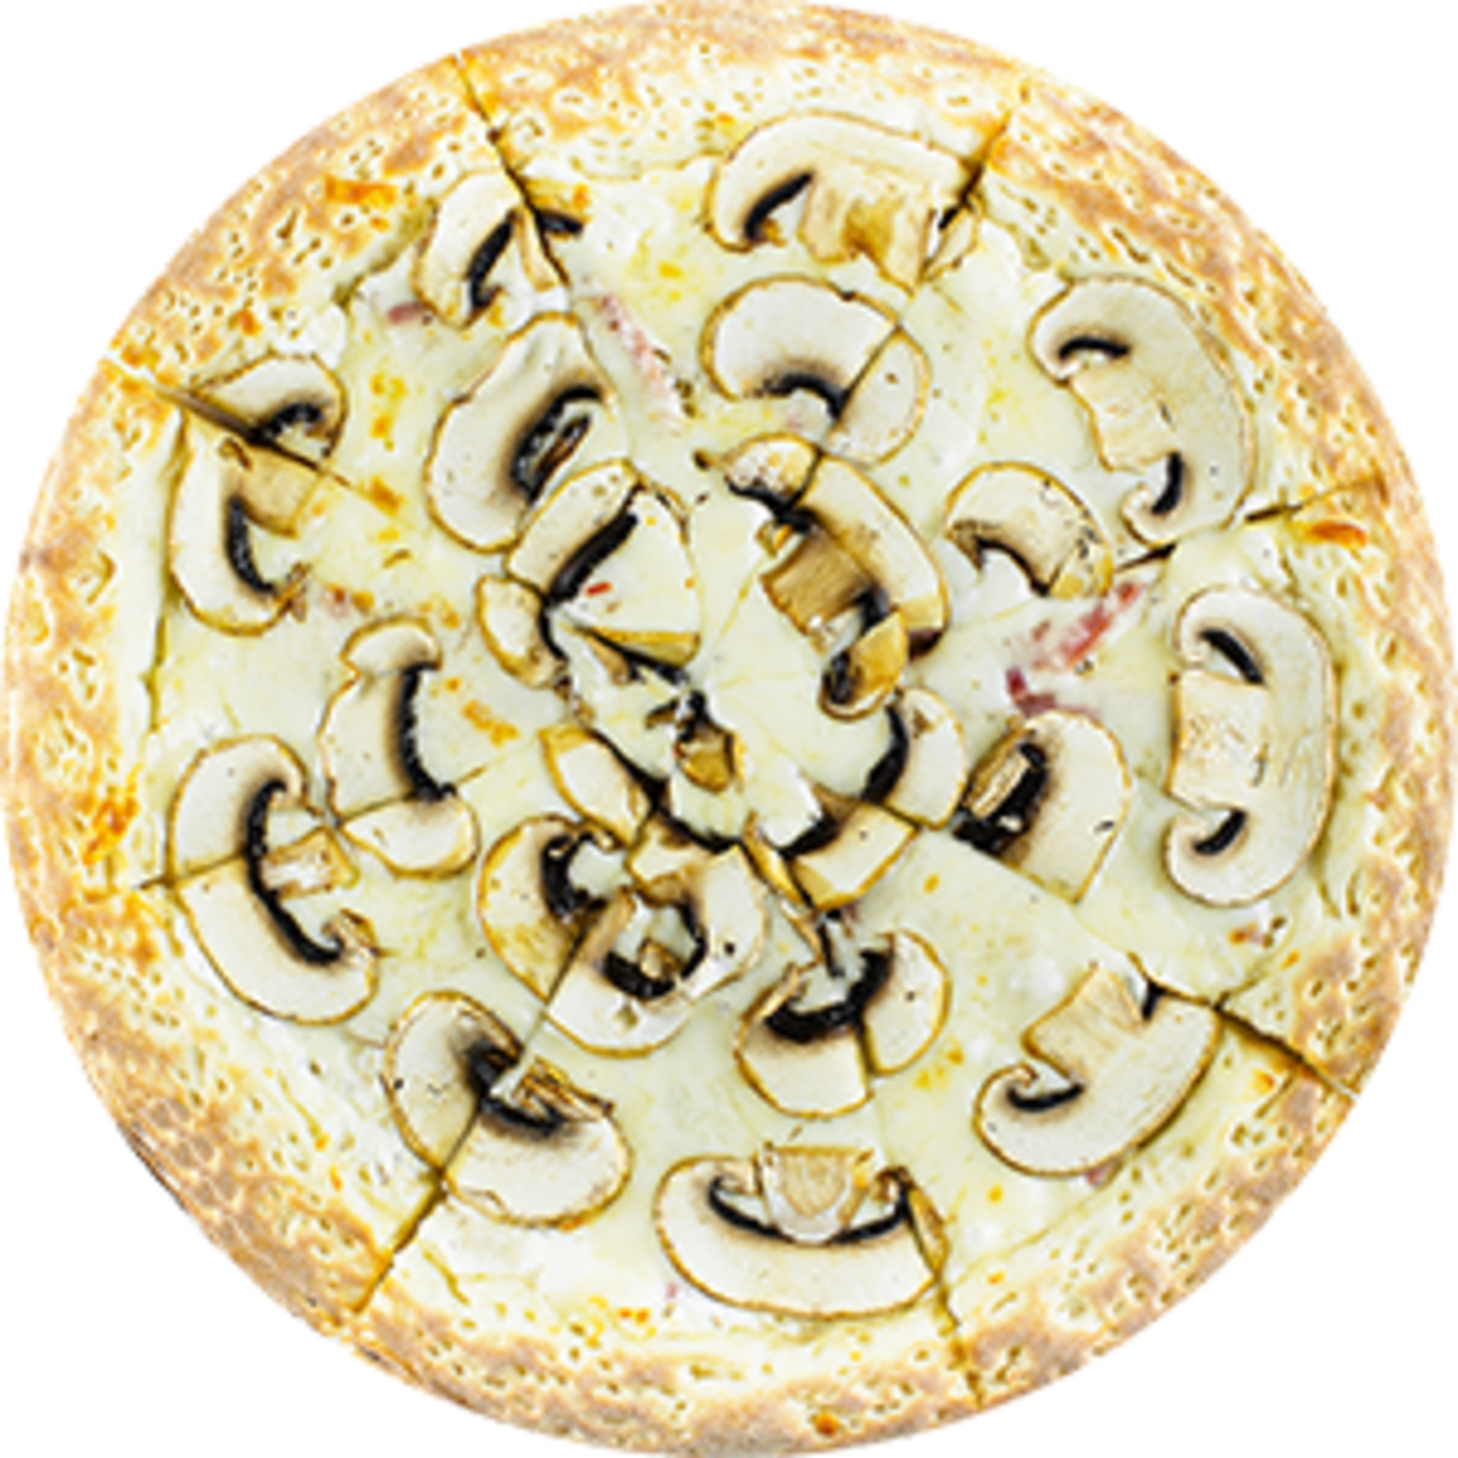 пицца грибная калорийность на 100 грамм фото 39